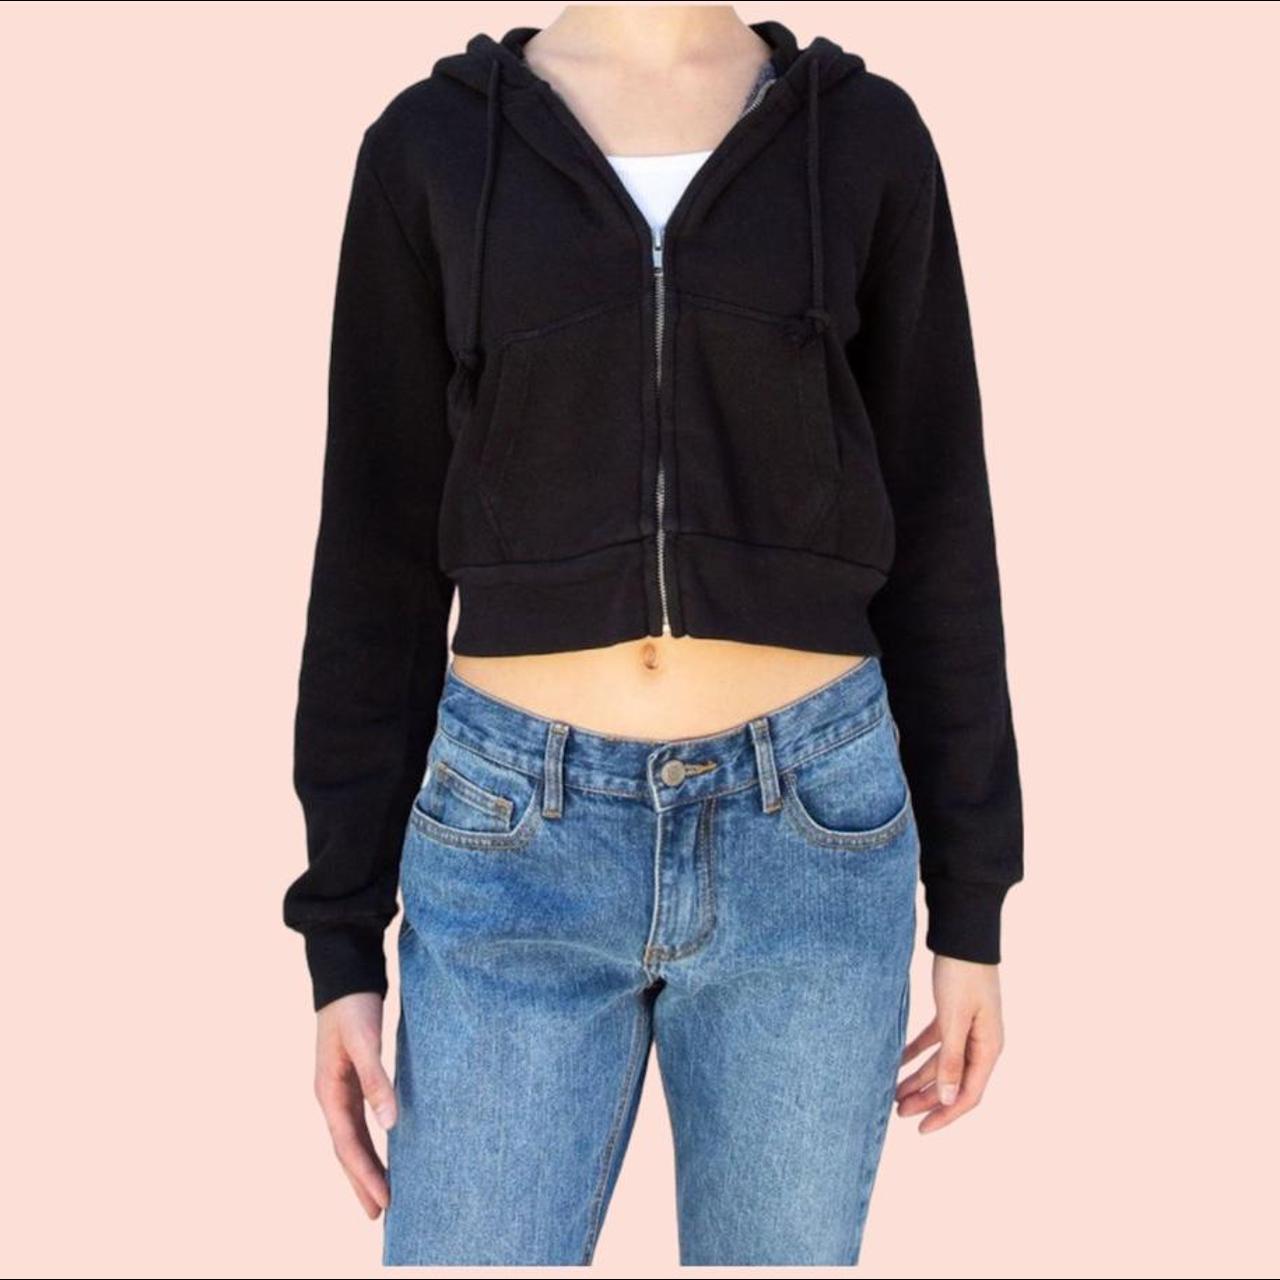 Brandy Melville Black Crop Zip-up Hoodie Sweater Jacket